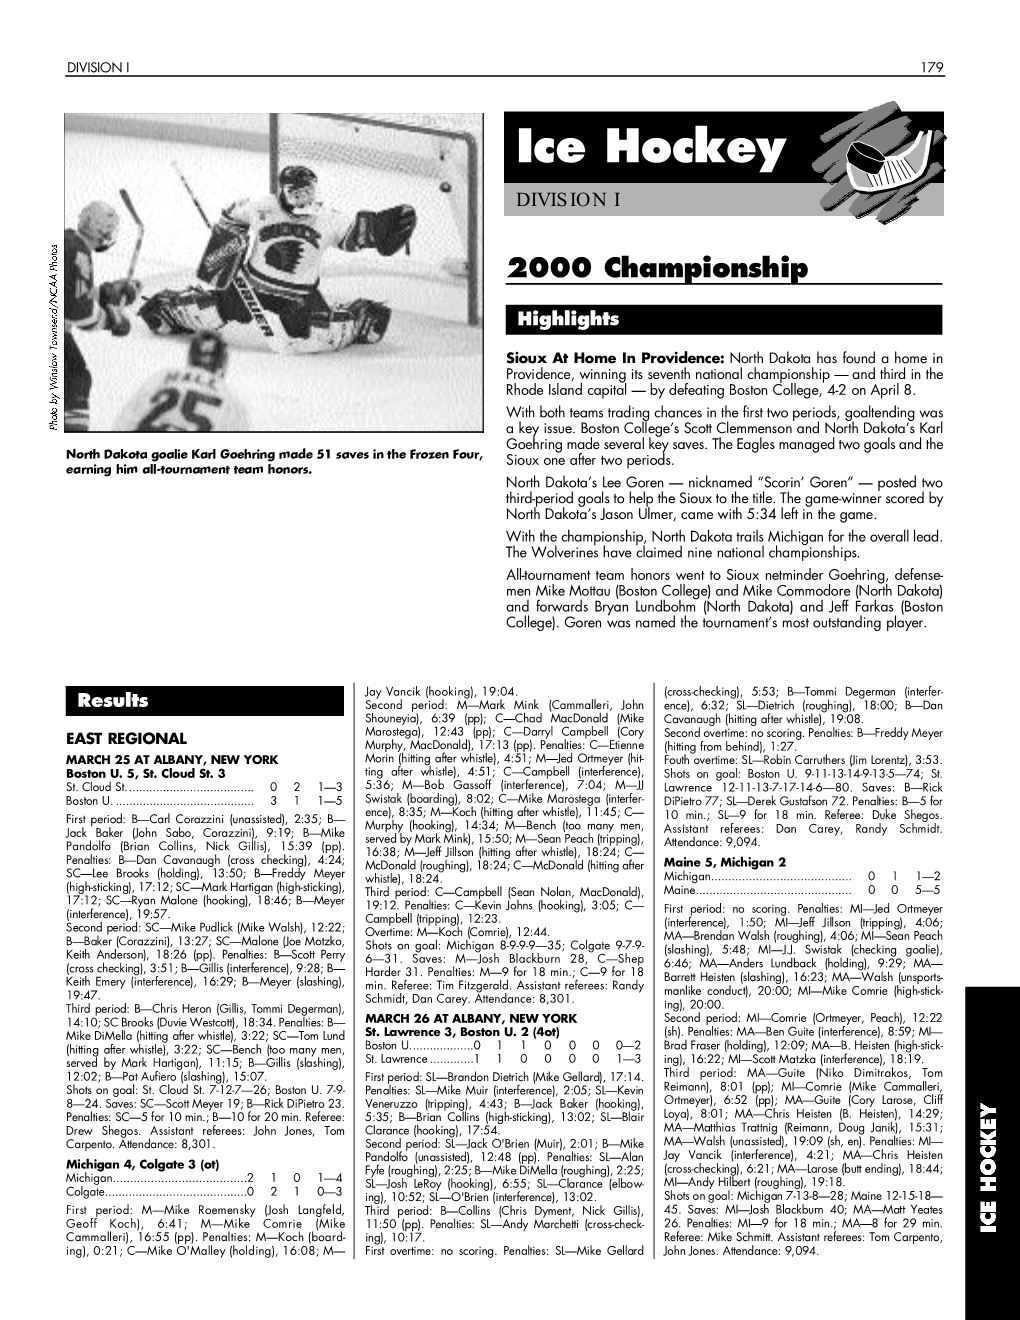 1999-00 NCAA Men's Ice Hockey Championships Records